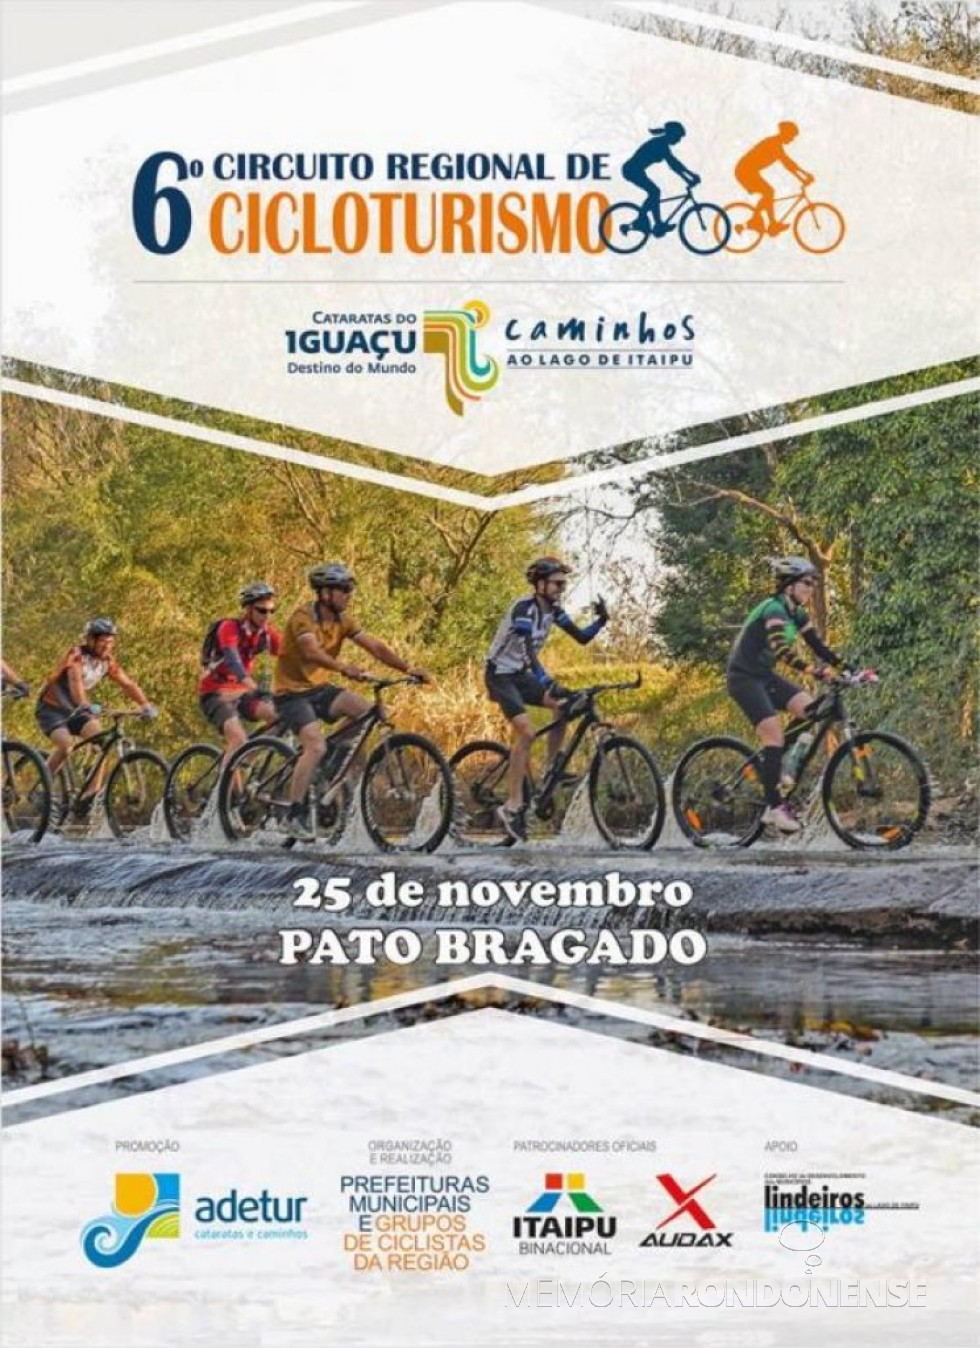 || Cartaz da etapa de Pato Bragado da 6º Circuito Regional de Cicloturismo, em novembro de 2018.
Imagem: Acervo Projeto Memória Rondonense - FOTO 13  - 